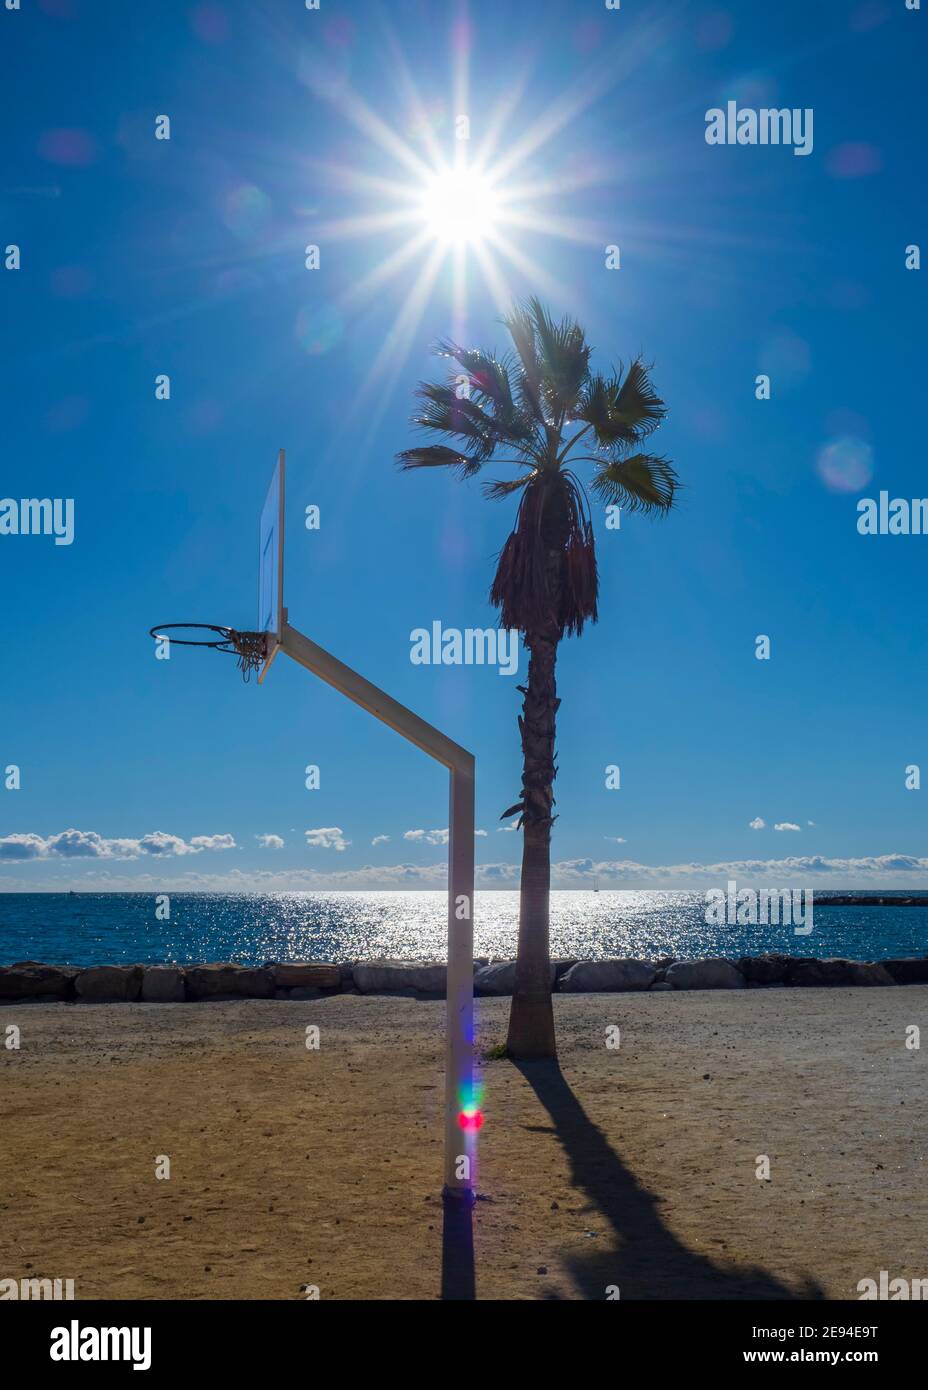 Canasta de baloncesto junto a una palmera frente al mar en un soleado día de invierno. Foto de stock